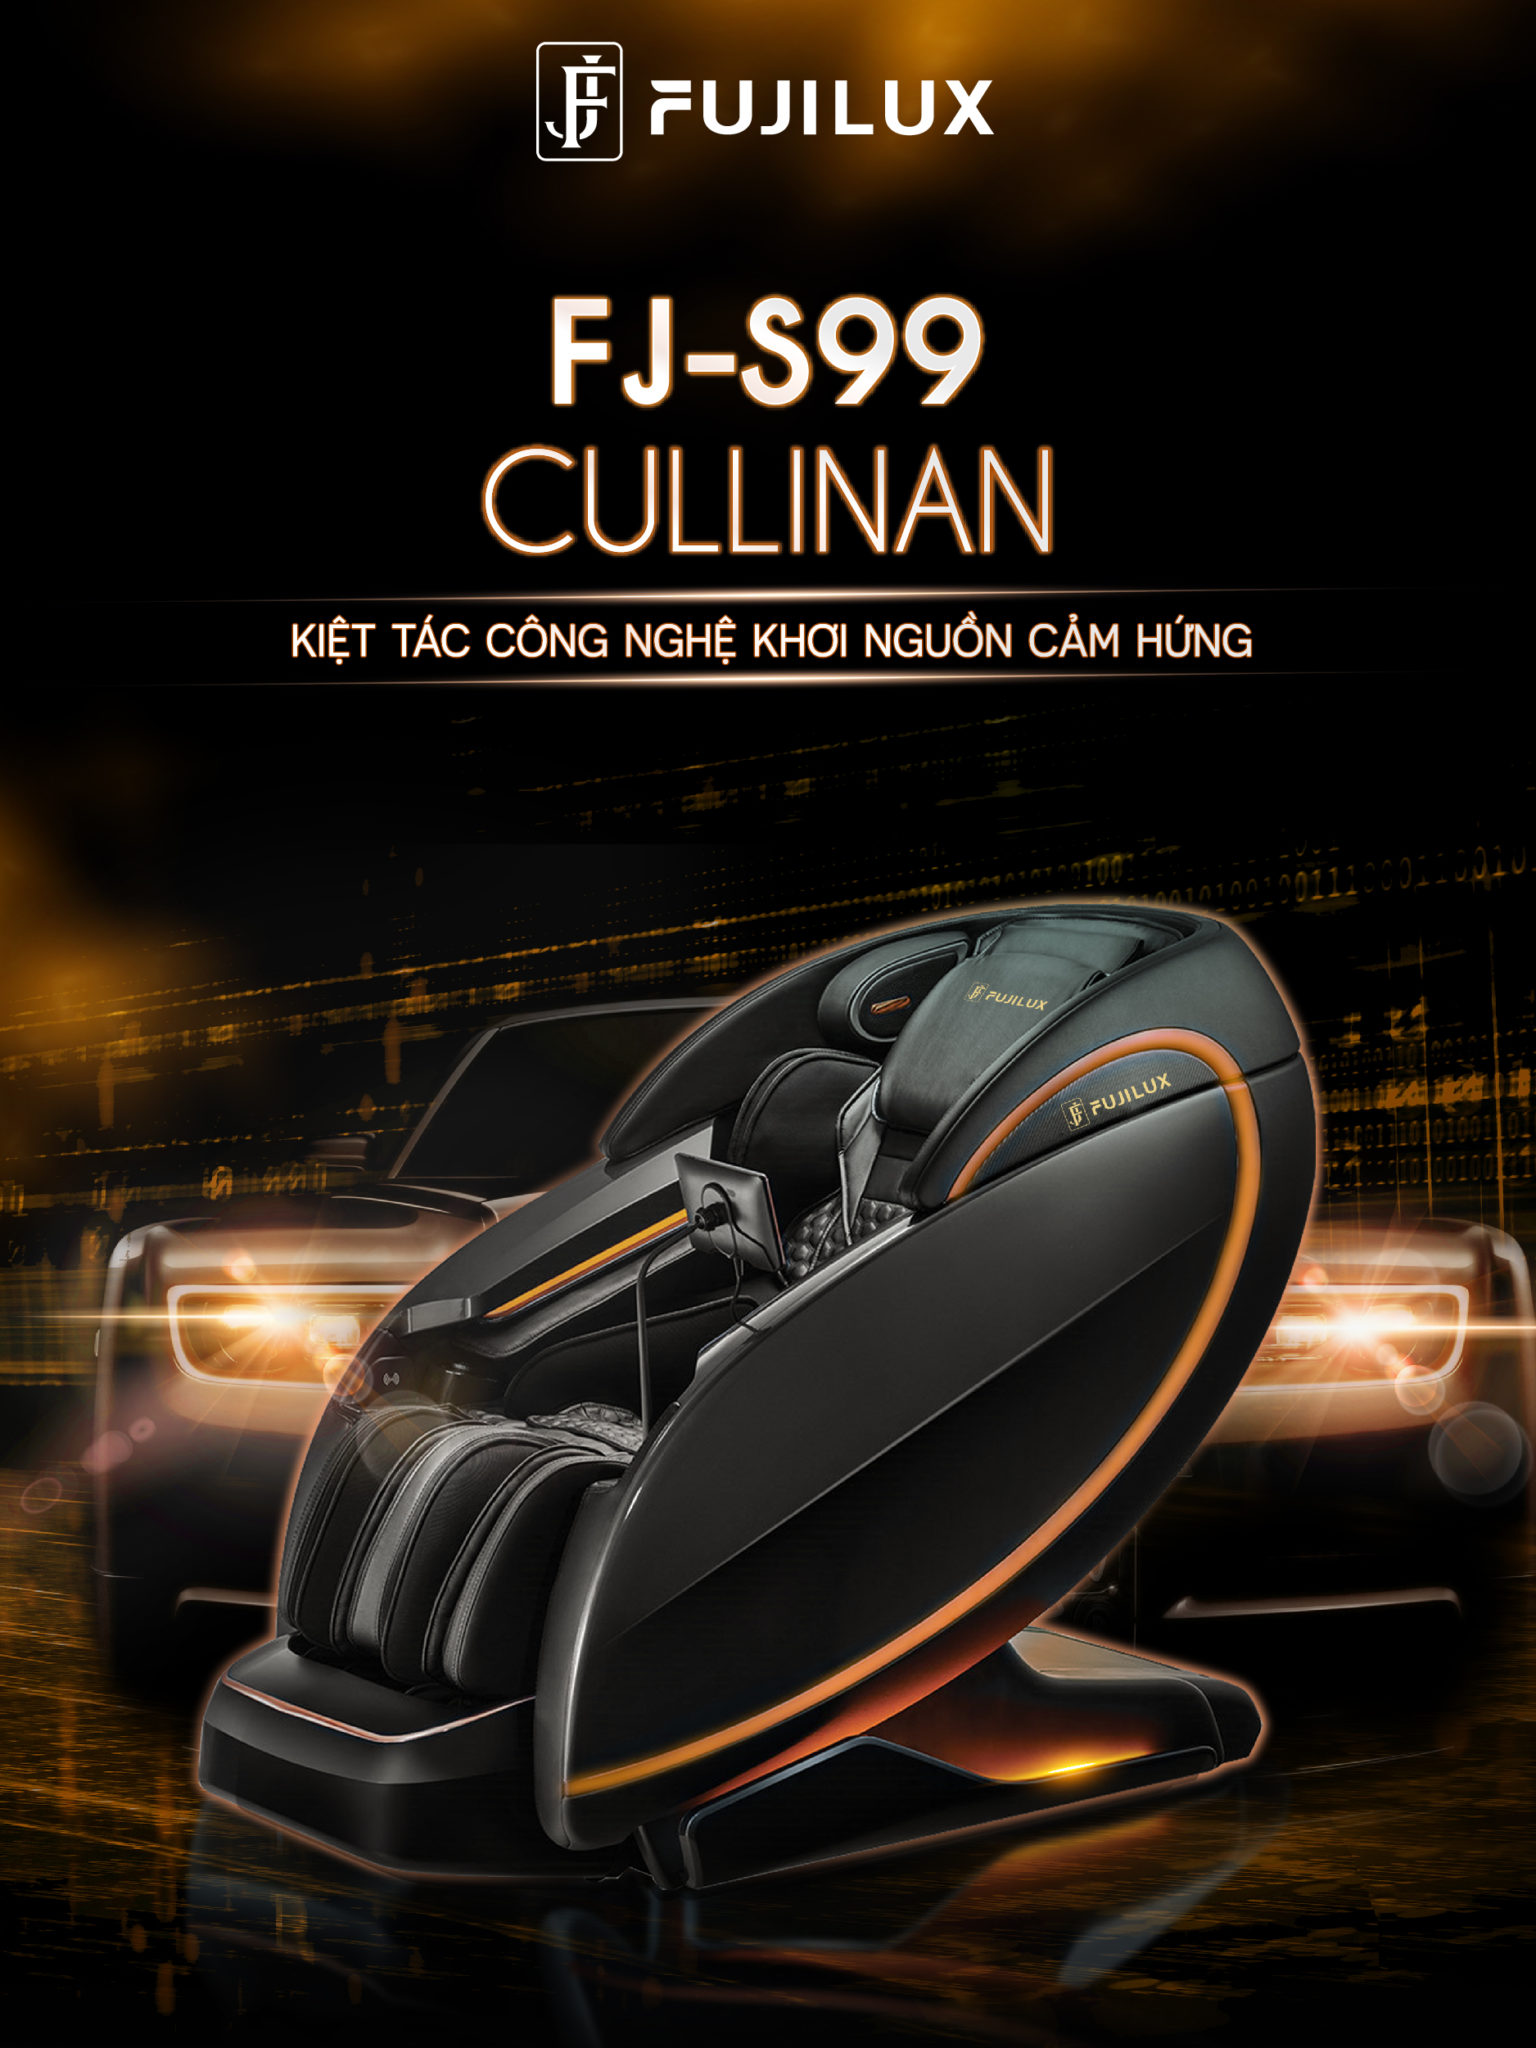 FJ - S99 Cullinan - "Viên kim cương đen" giữa phố đêm thành thị